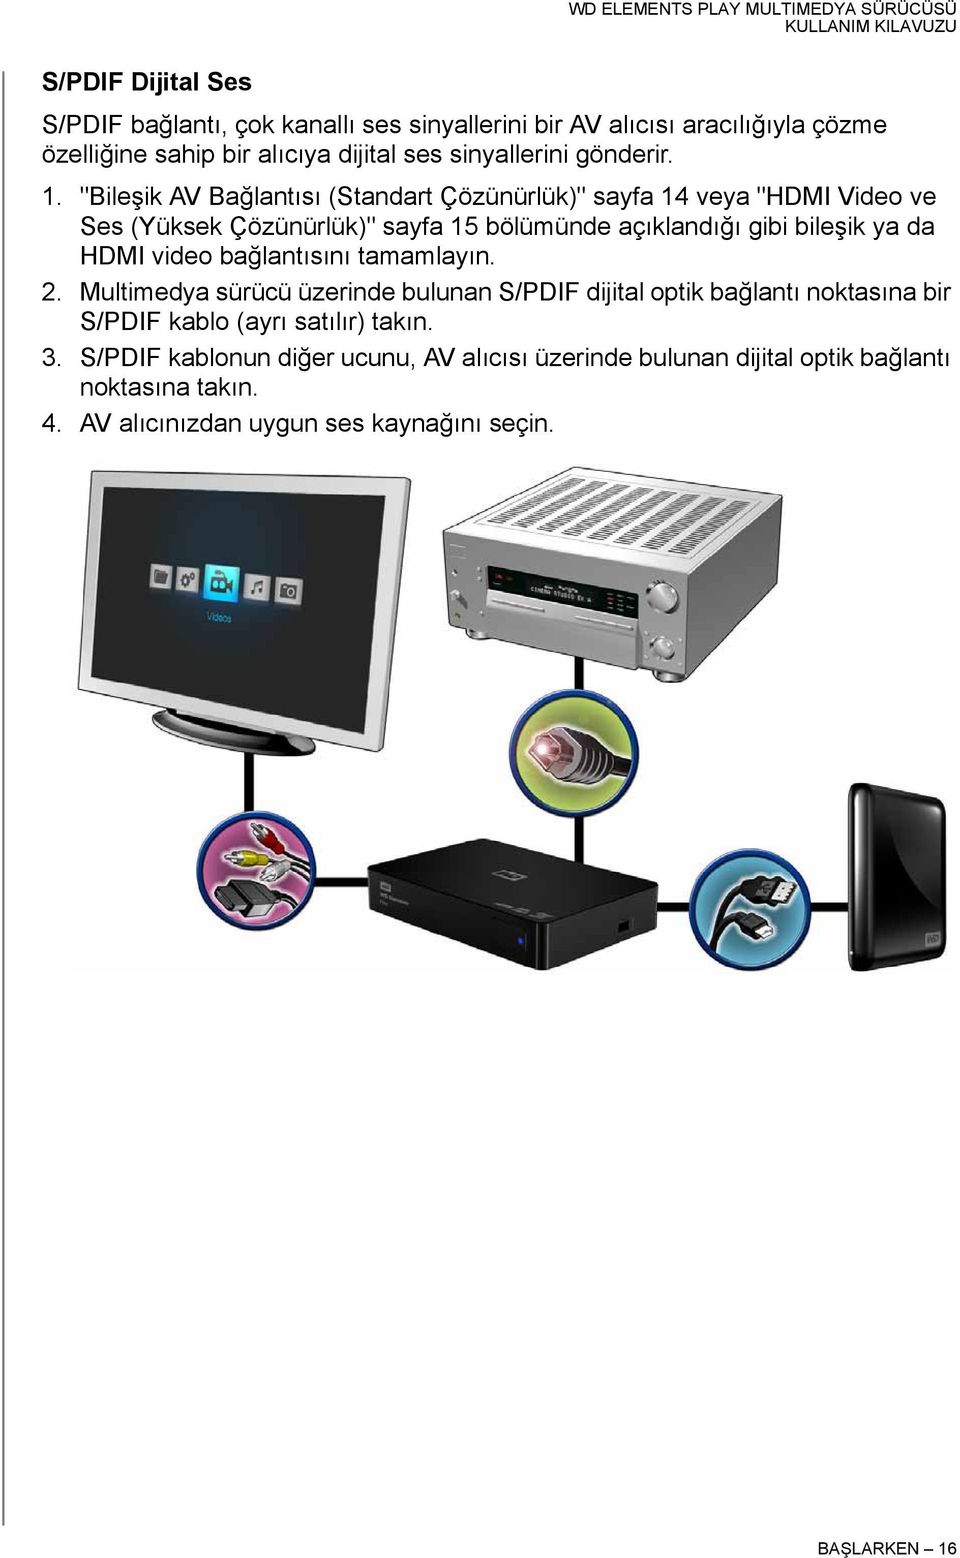 "Bileşik AV Bağlantısı (Standart Çözünürlük)" sayfa 14 veya "HDMI Video ve Ses (Yüksek Çözünürlük)" sayfa 15 bölümünde açıklandığı gibi bileşik ya da HDMI